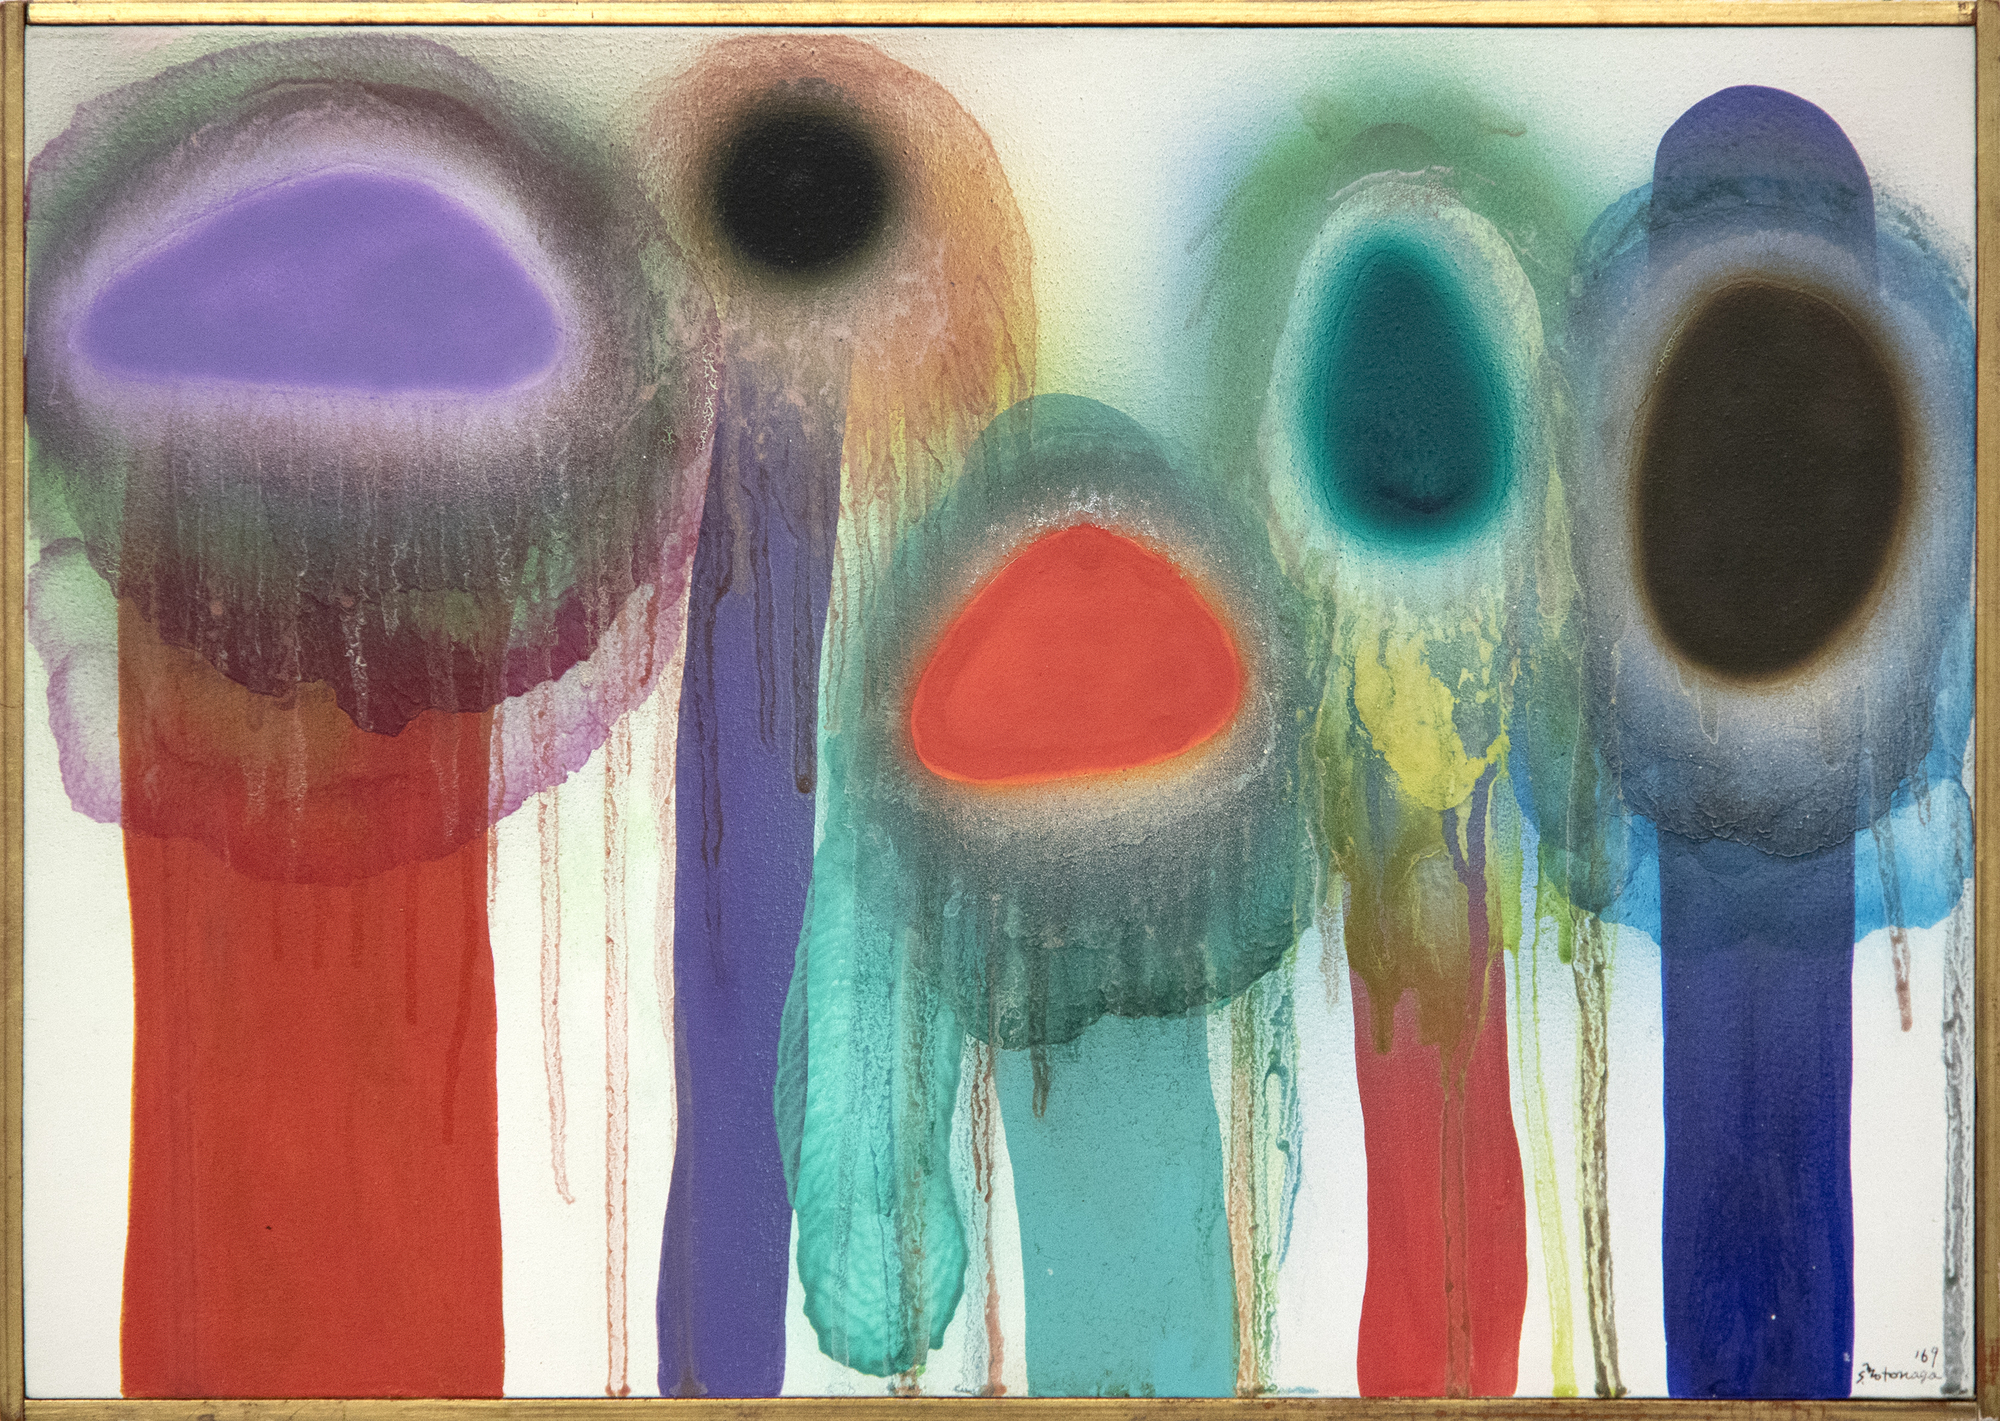 Como miembro de la legendaria Asociación de Arte Gutai, que floreció entre 1954 y 1972, Sadamasa Motonaga surgió cuando el existencialismo surrealista post-atómico estaba a la vanguardia del desarrollo artístico en Japón. Sin embargo, eligió un camino diferente. Dio la espalda a la destrucción provocada por la guerra y creó una obra fresca, jubilosa y lúdica. La obra "Sin título", de 1969, se inscribe en su estilo clásico, que se desarrolló al mismo tiempo que las pinturas de Morris Louis denominadas "Velo". Es una muestra brillantemente lograda de la versión vanguardista de Motonaga del tradicional Tarashikomi japonés, la técnica que consiste en inclinar el lienzo en diferentes ángulos para permitir que las mezclas de resina y esmalte fluyan unas sobre otras antes de que la pintura esté completamente seca.